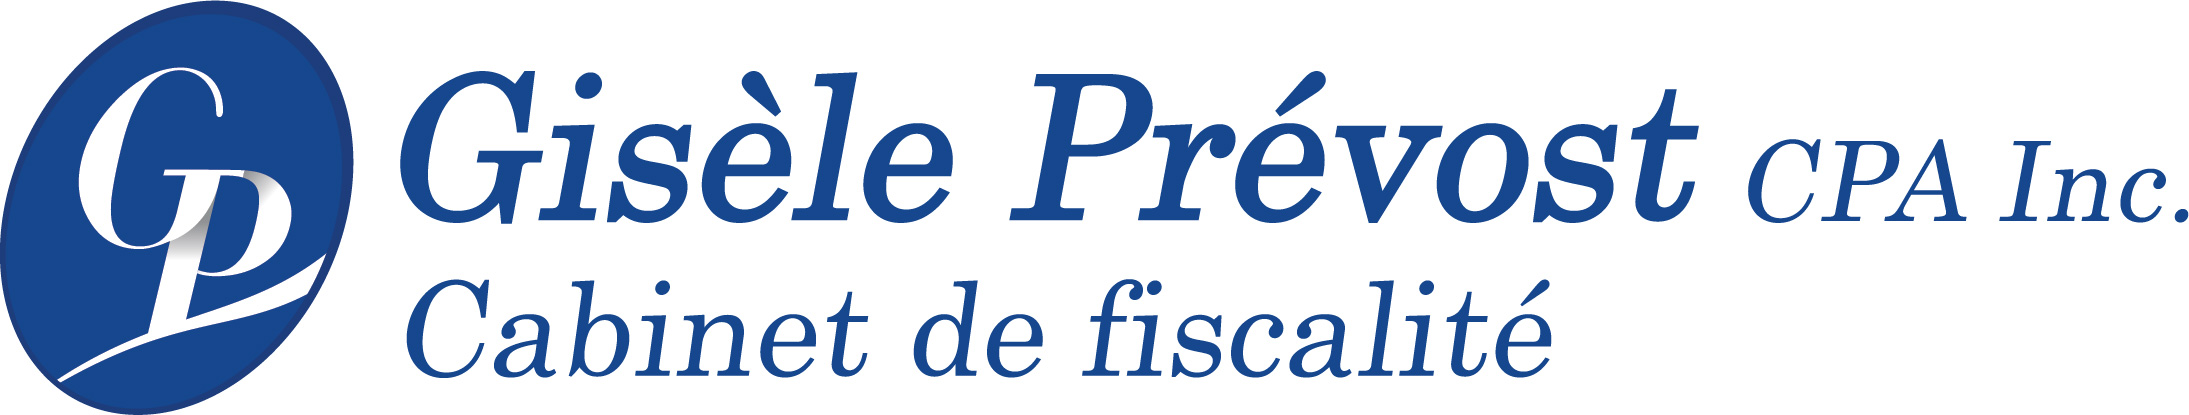 Logo Gisèle Prévost CPA Inc. - Cabinet de fiscalité (2).jpg